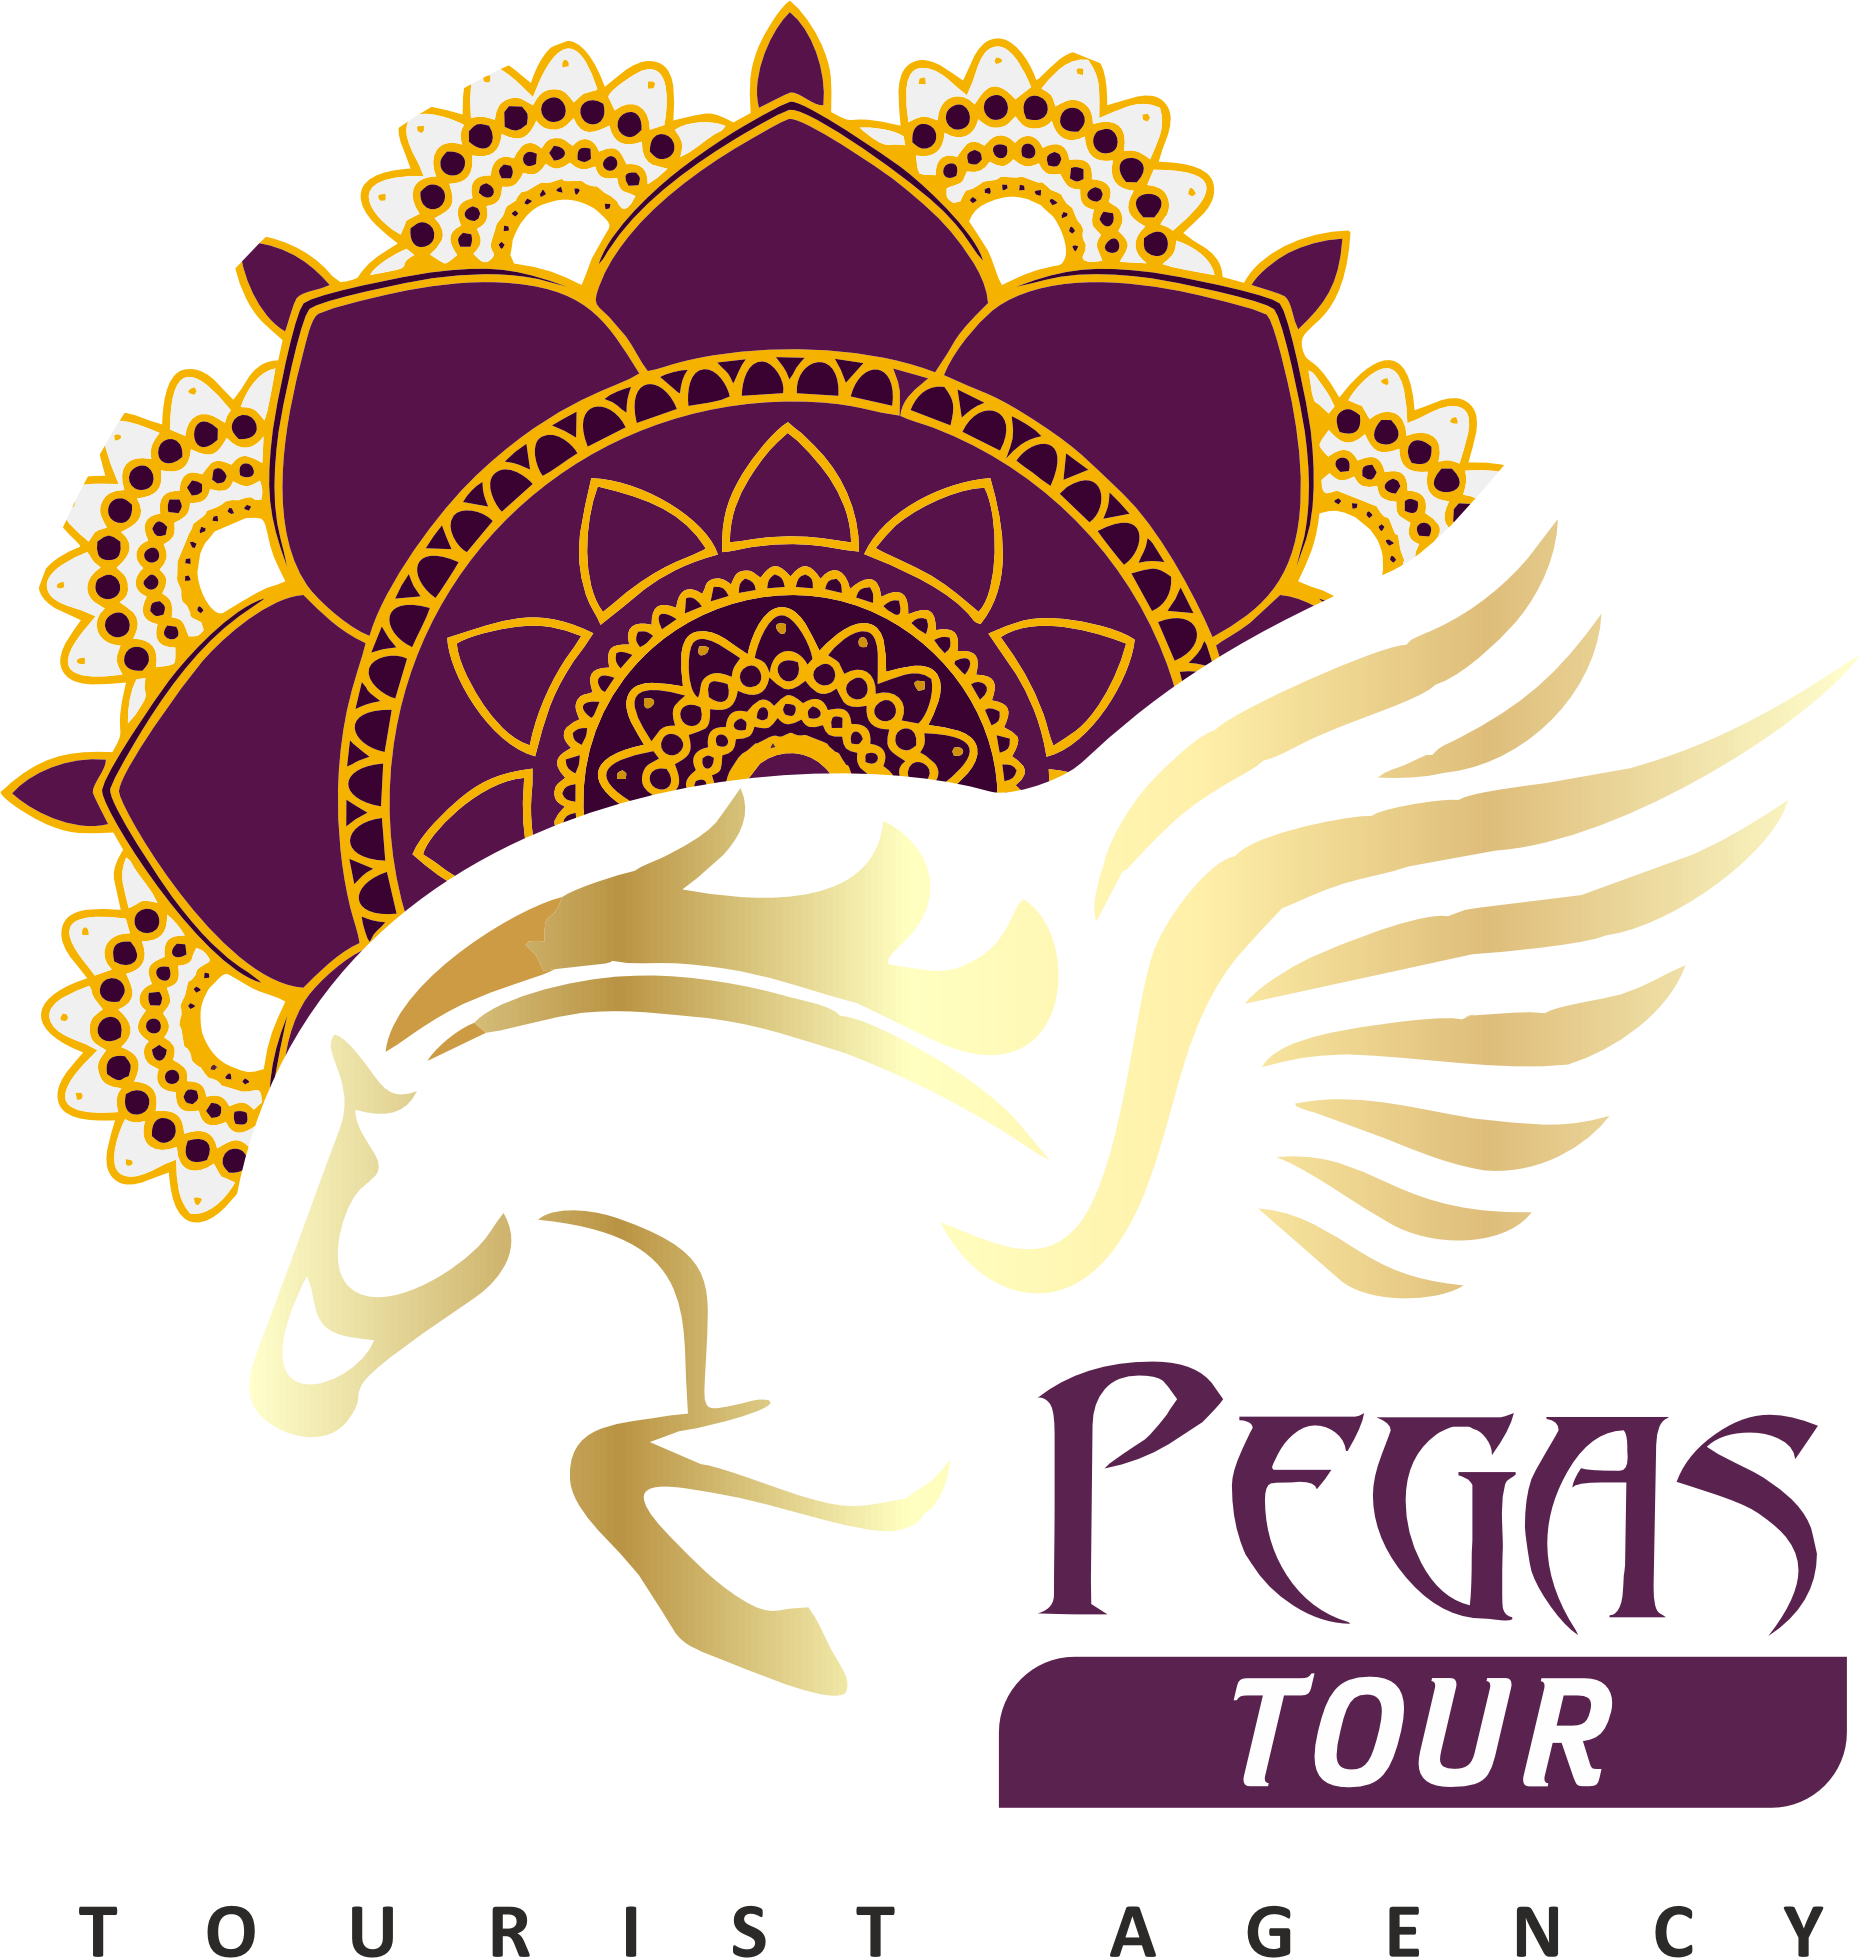 Pegas Tour